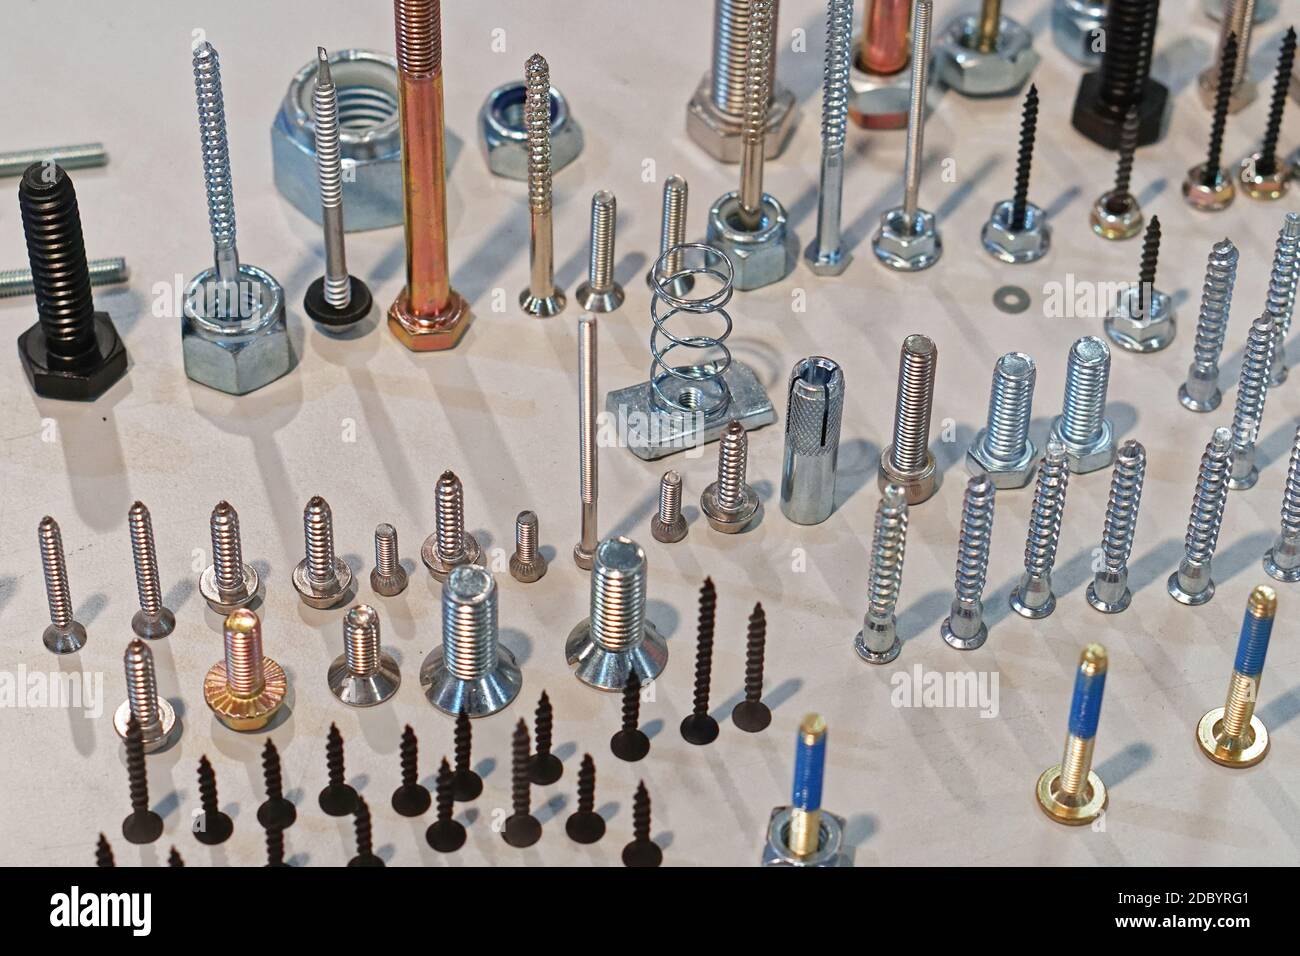 Viele verschiedene Schrauben und Schrauben Teile Stockfotografie - Alamy